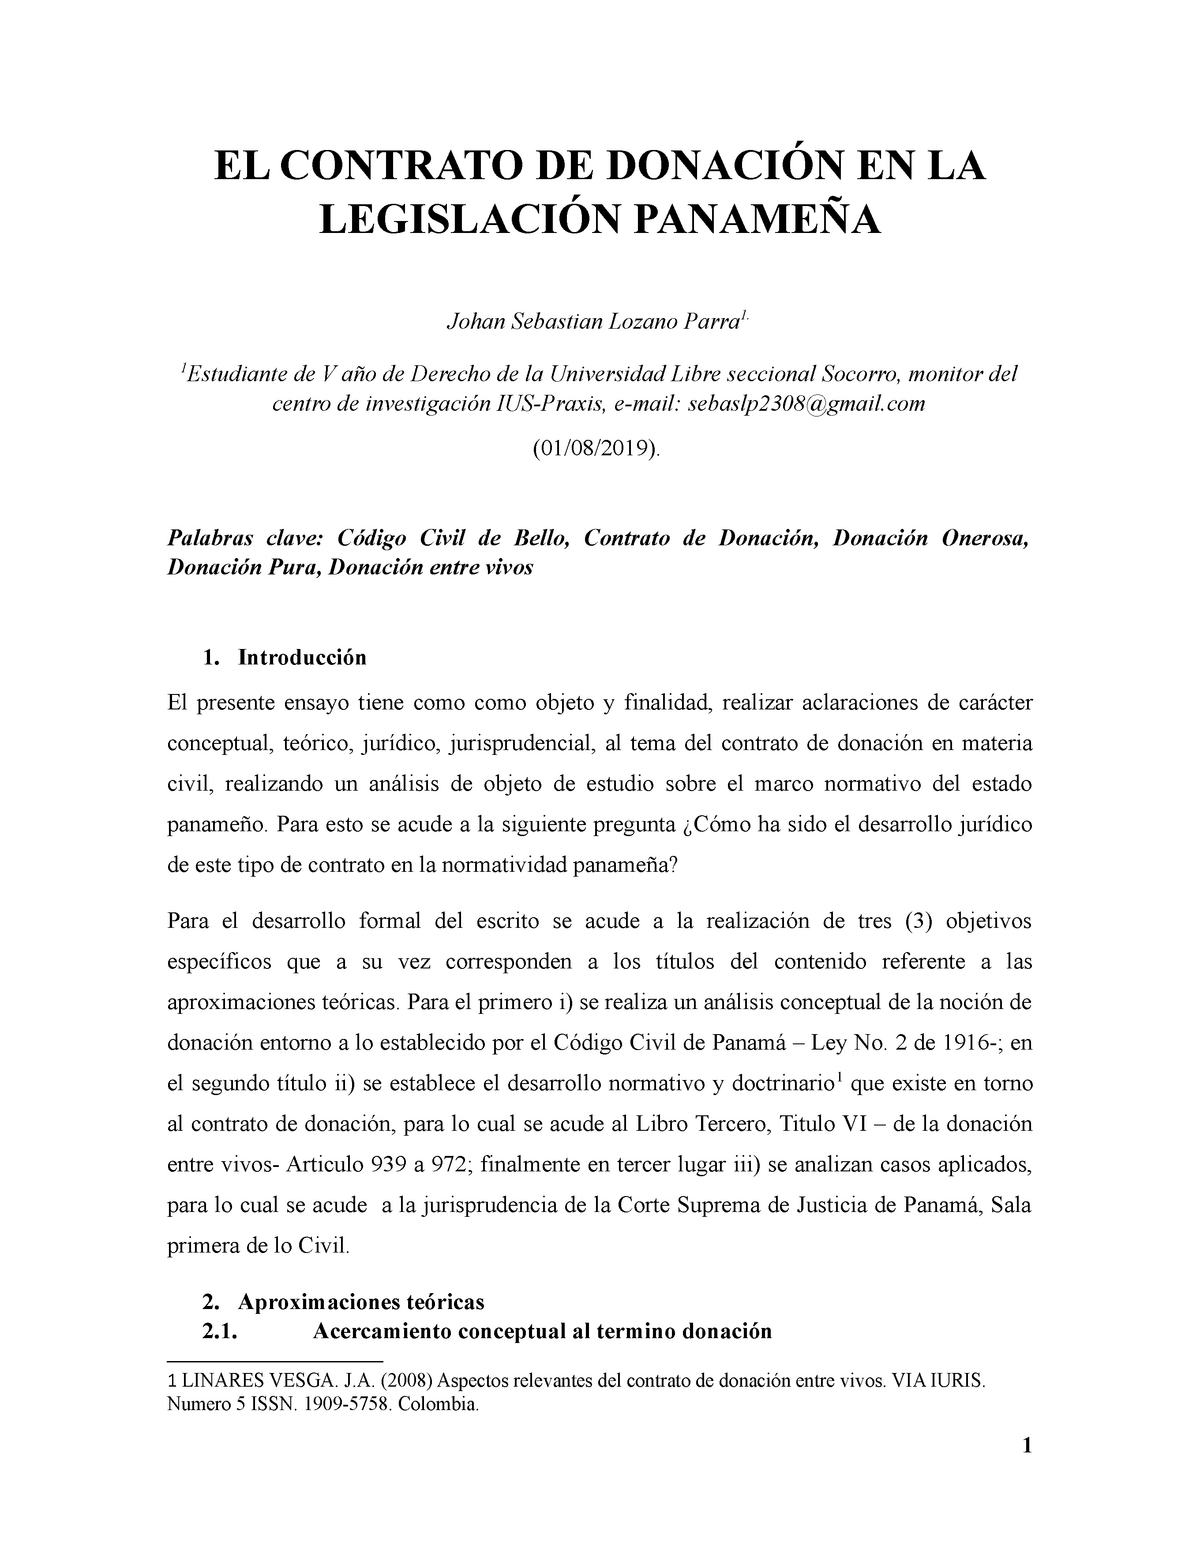 EL Contrato DE Donación EN LA Legislación Panameña - EL CONTRATO DE DONACIÓN  EN LA LEGISLACIÓN - Studocu